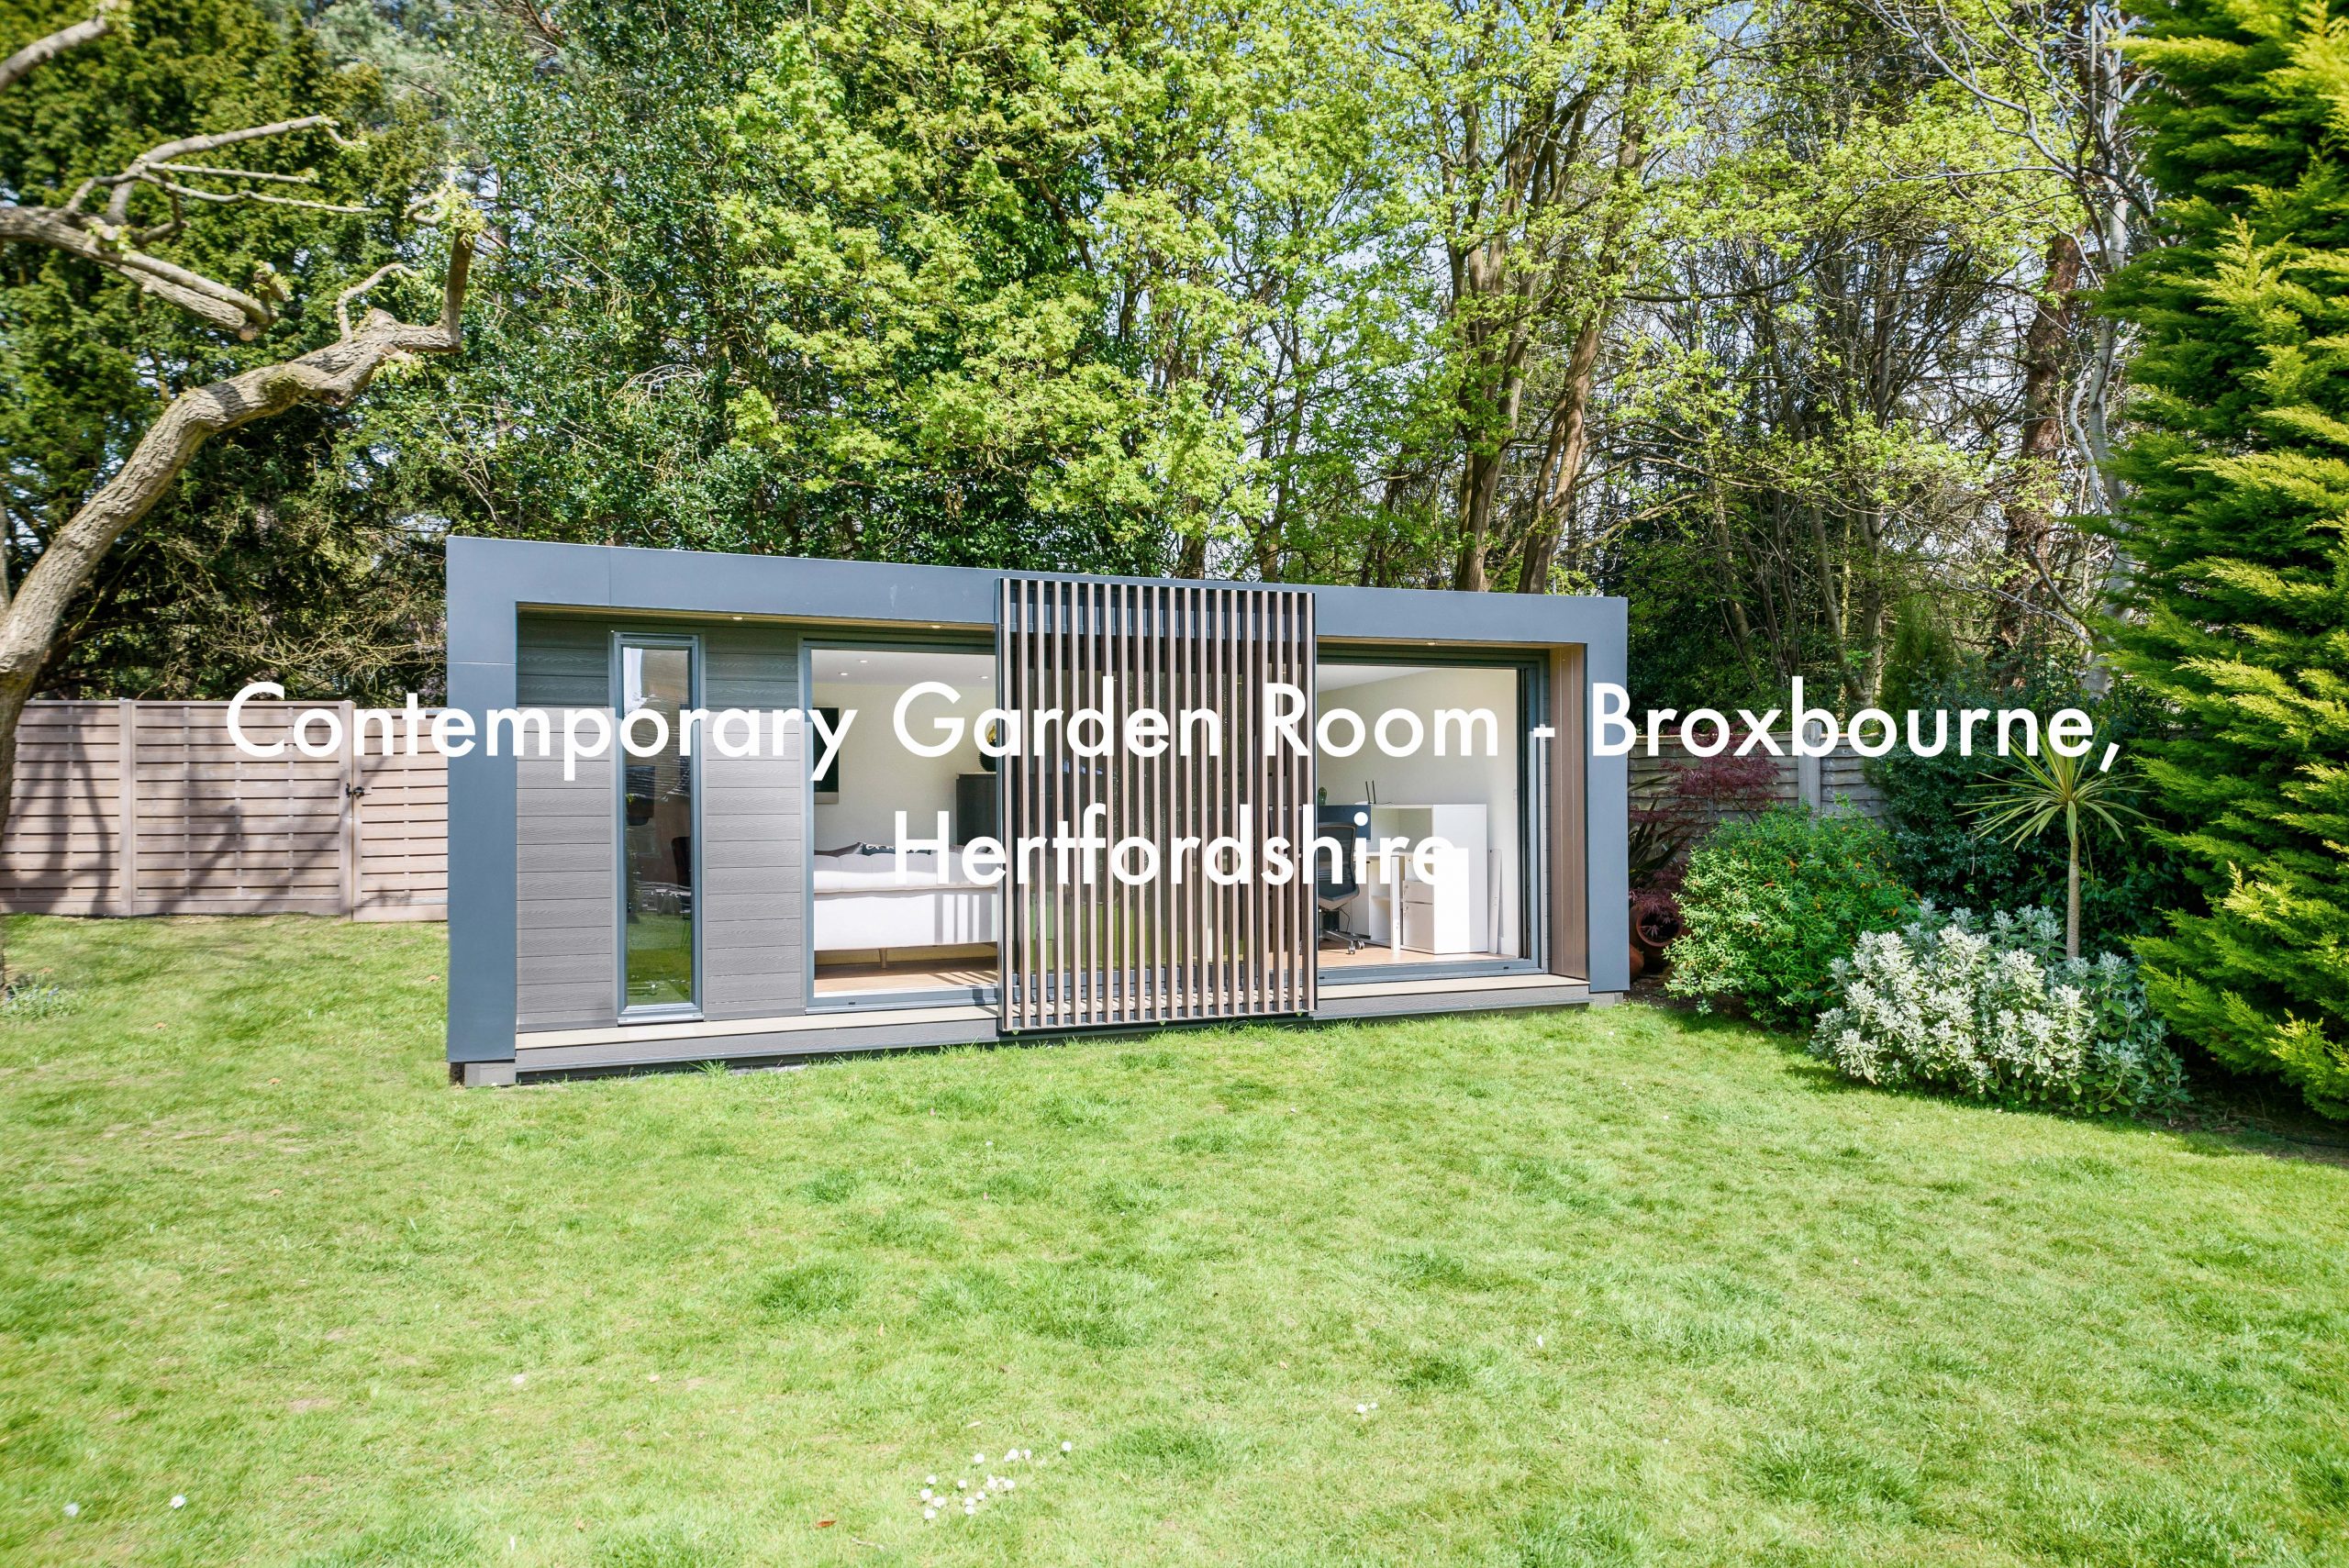 Contemporary garden room